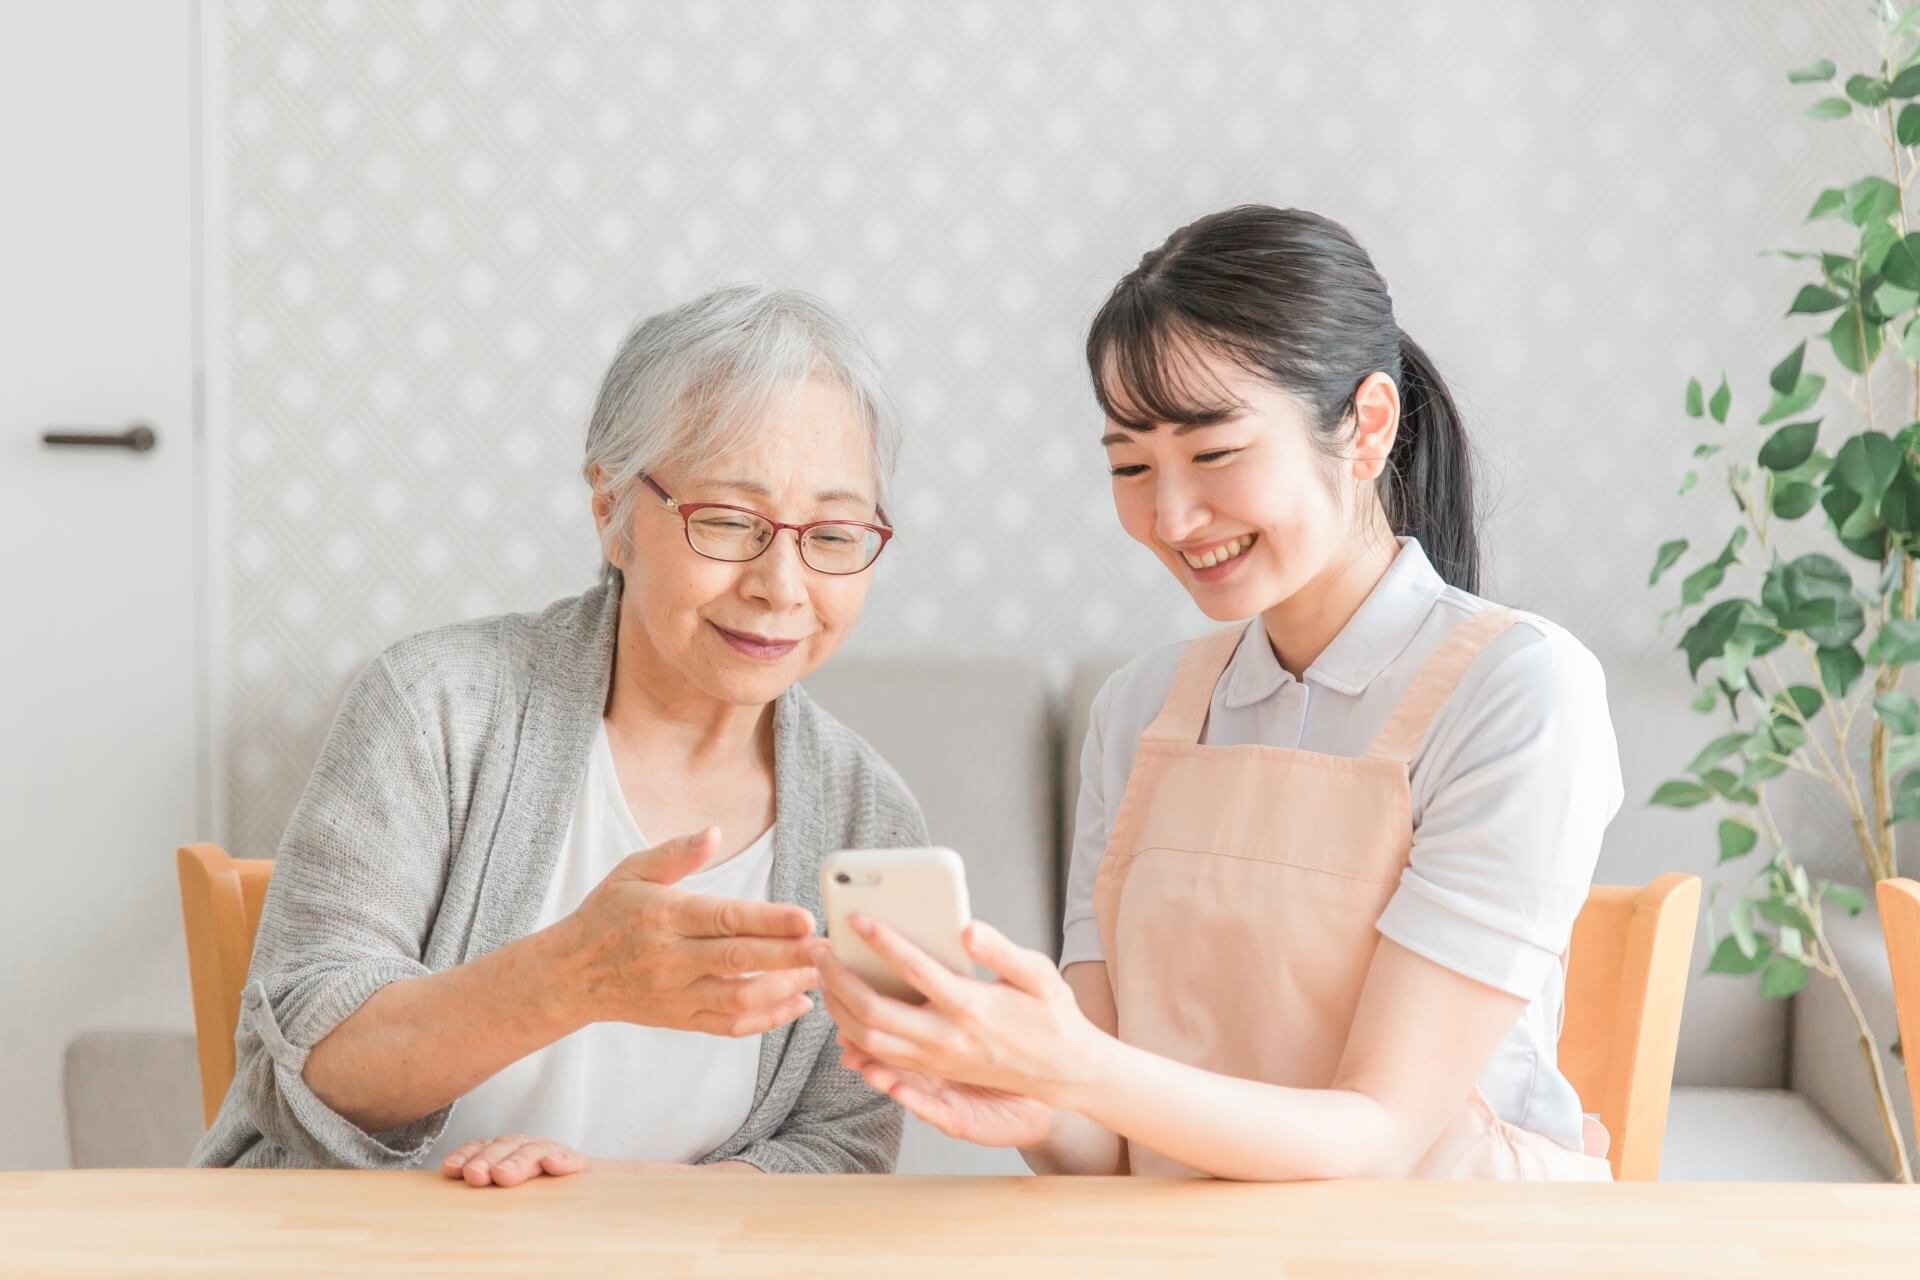 女性家政婦スタッフとご高齢女性が、共にスマートフォンを眺めて笑っている写真